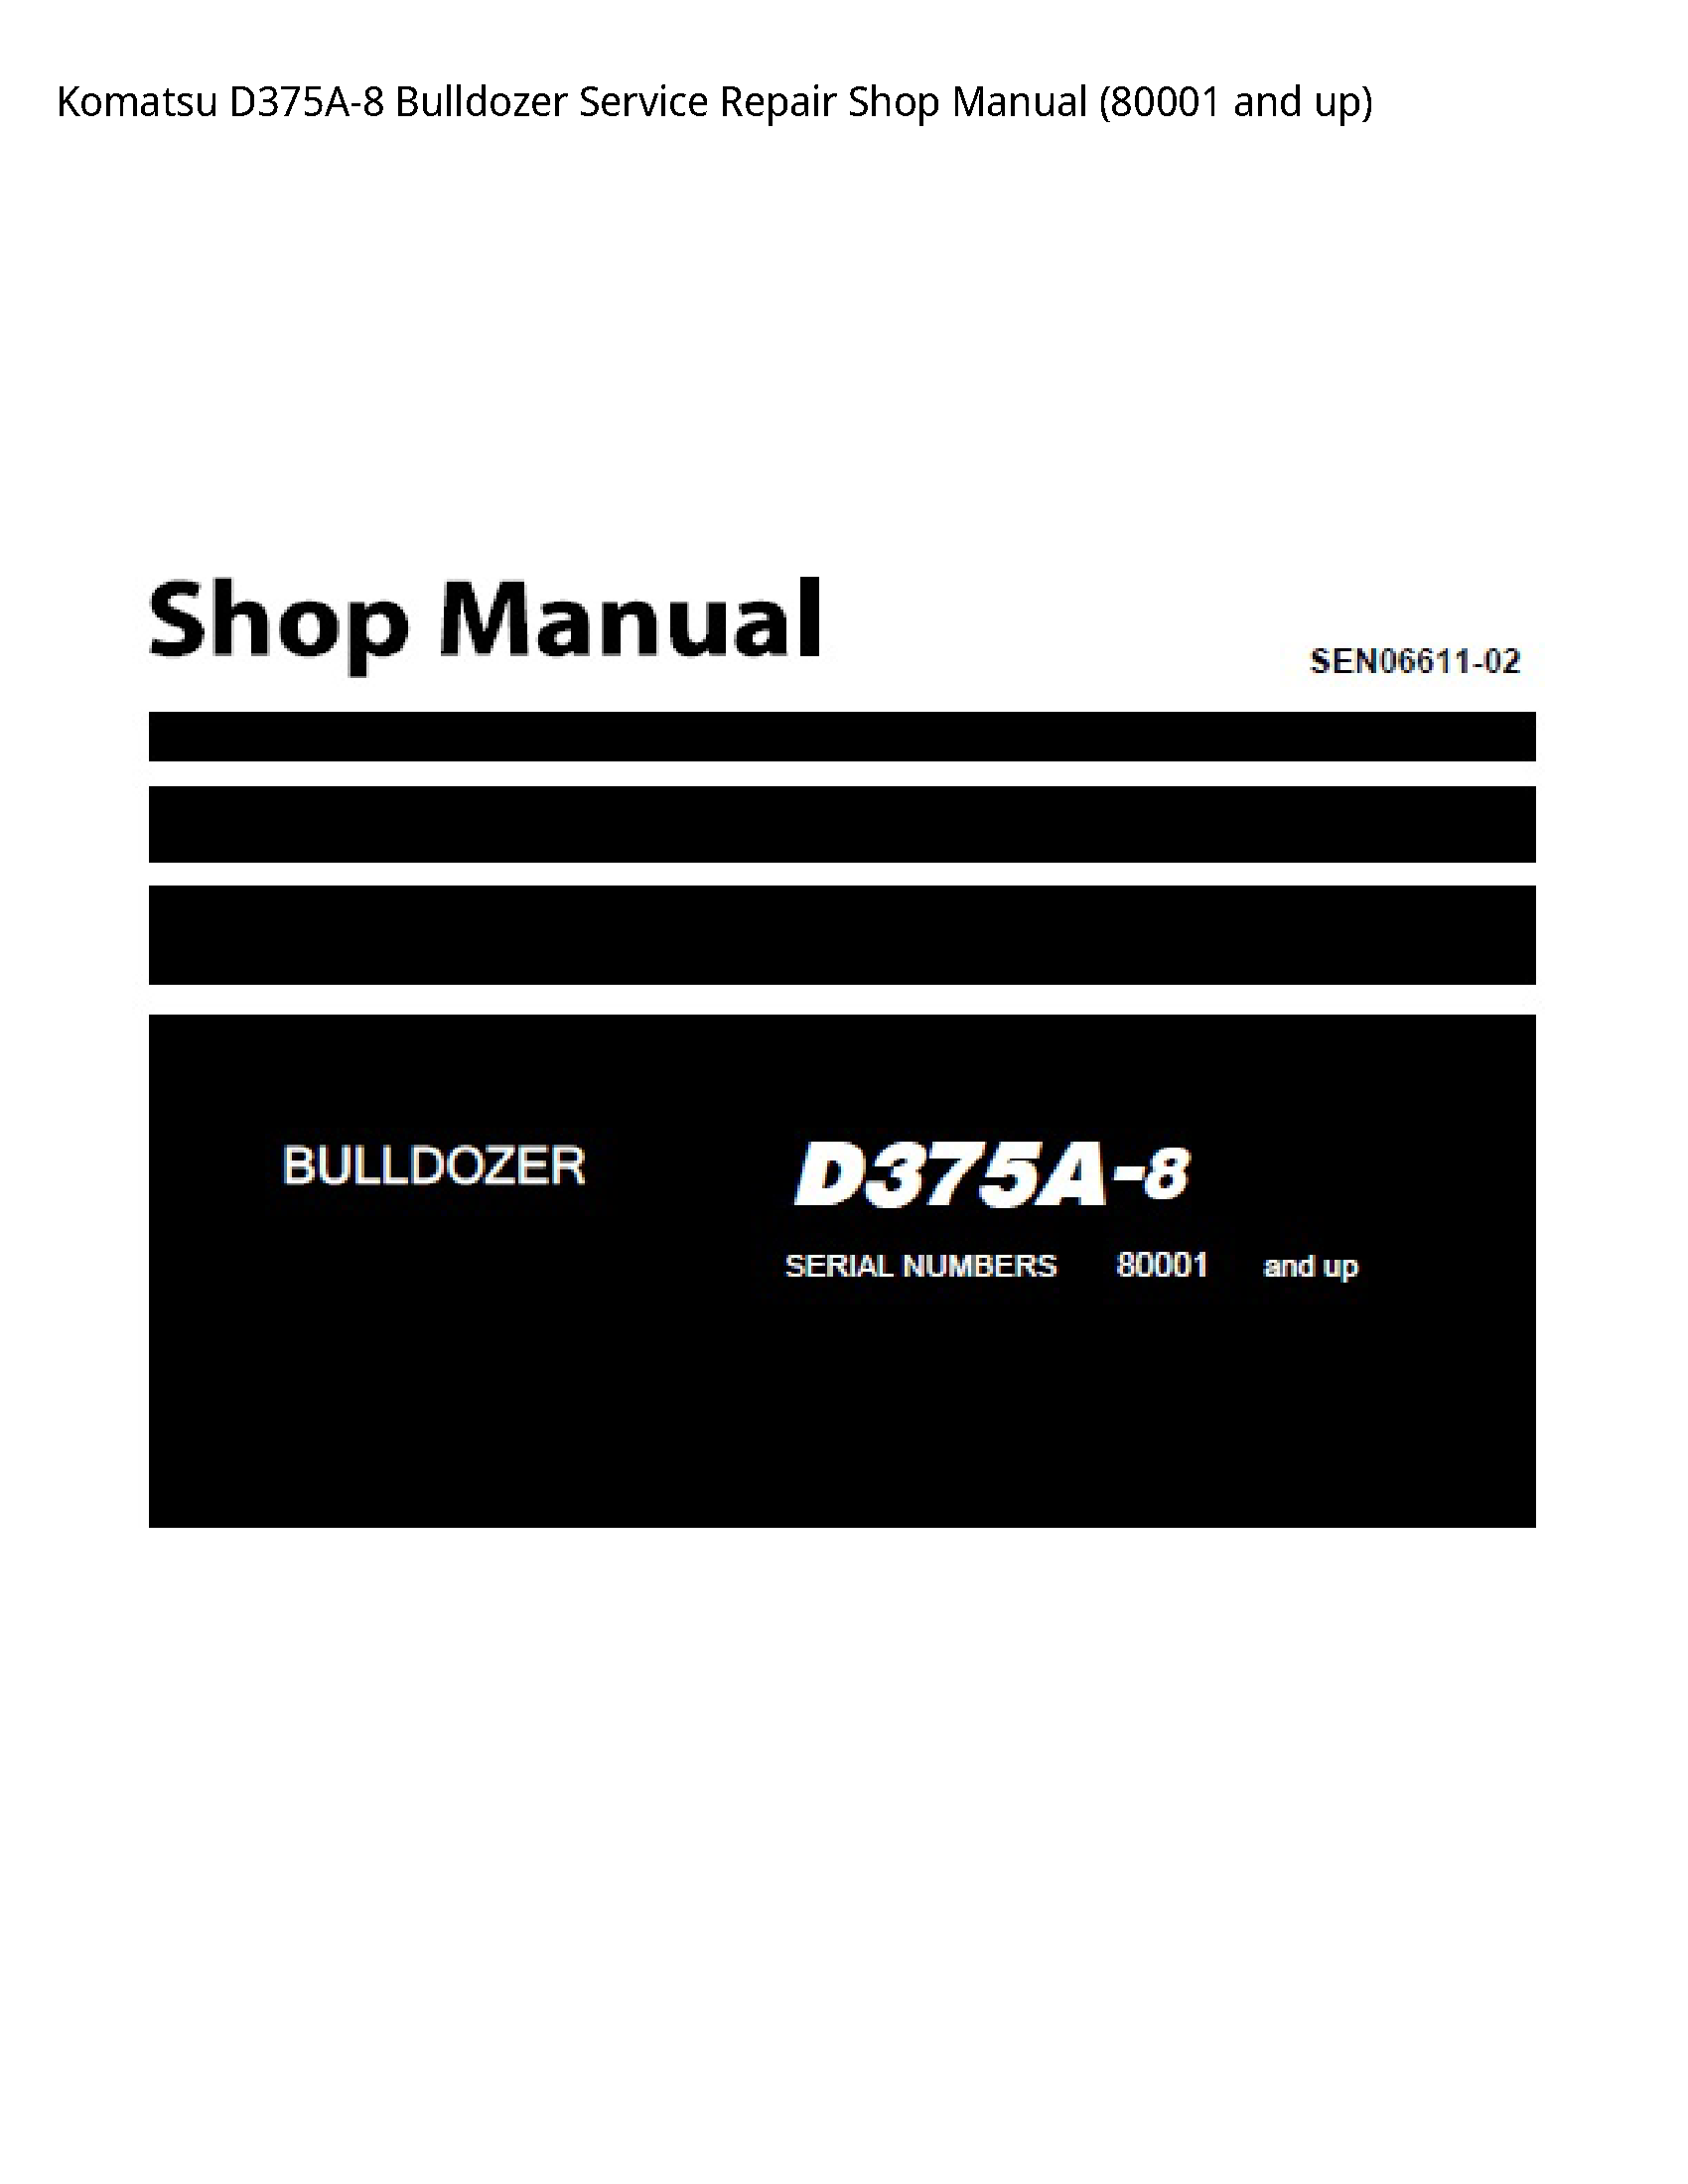 KOMATSU D375A-8 Bulldozer manual